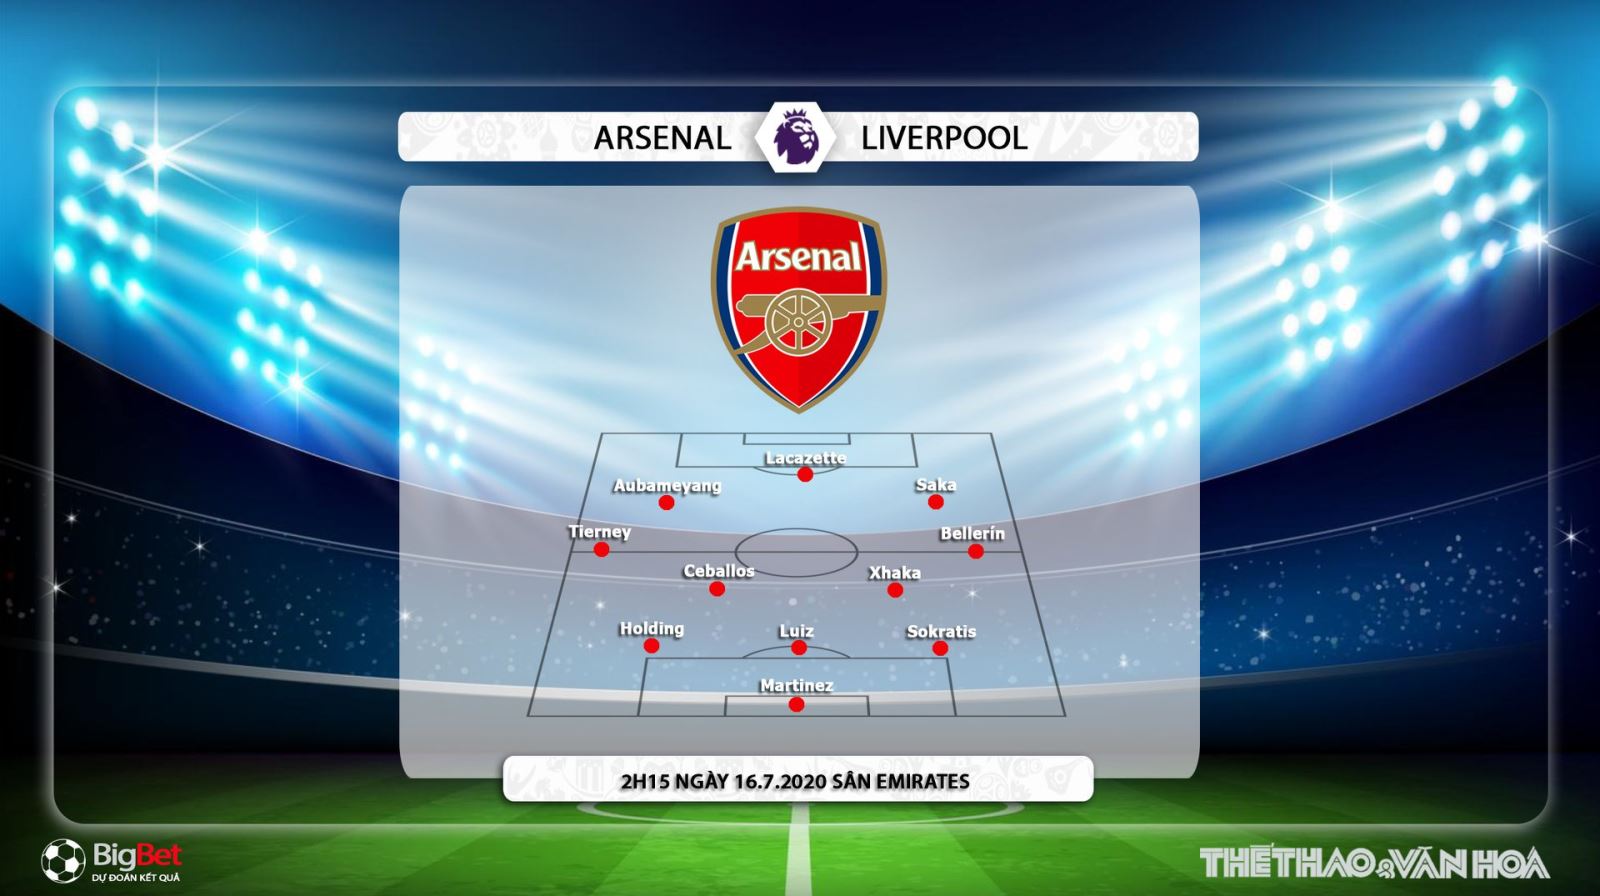 Arsenal vs Liverpool, Arsenal, Liverpool, nhận định bóng đá, kèo bóng đá, trực tiếp bóng đá, bóng đá hôm nay, nhận định, dự đoán